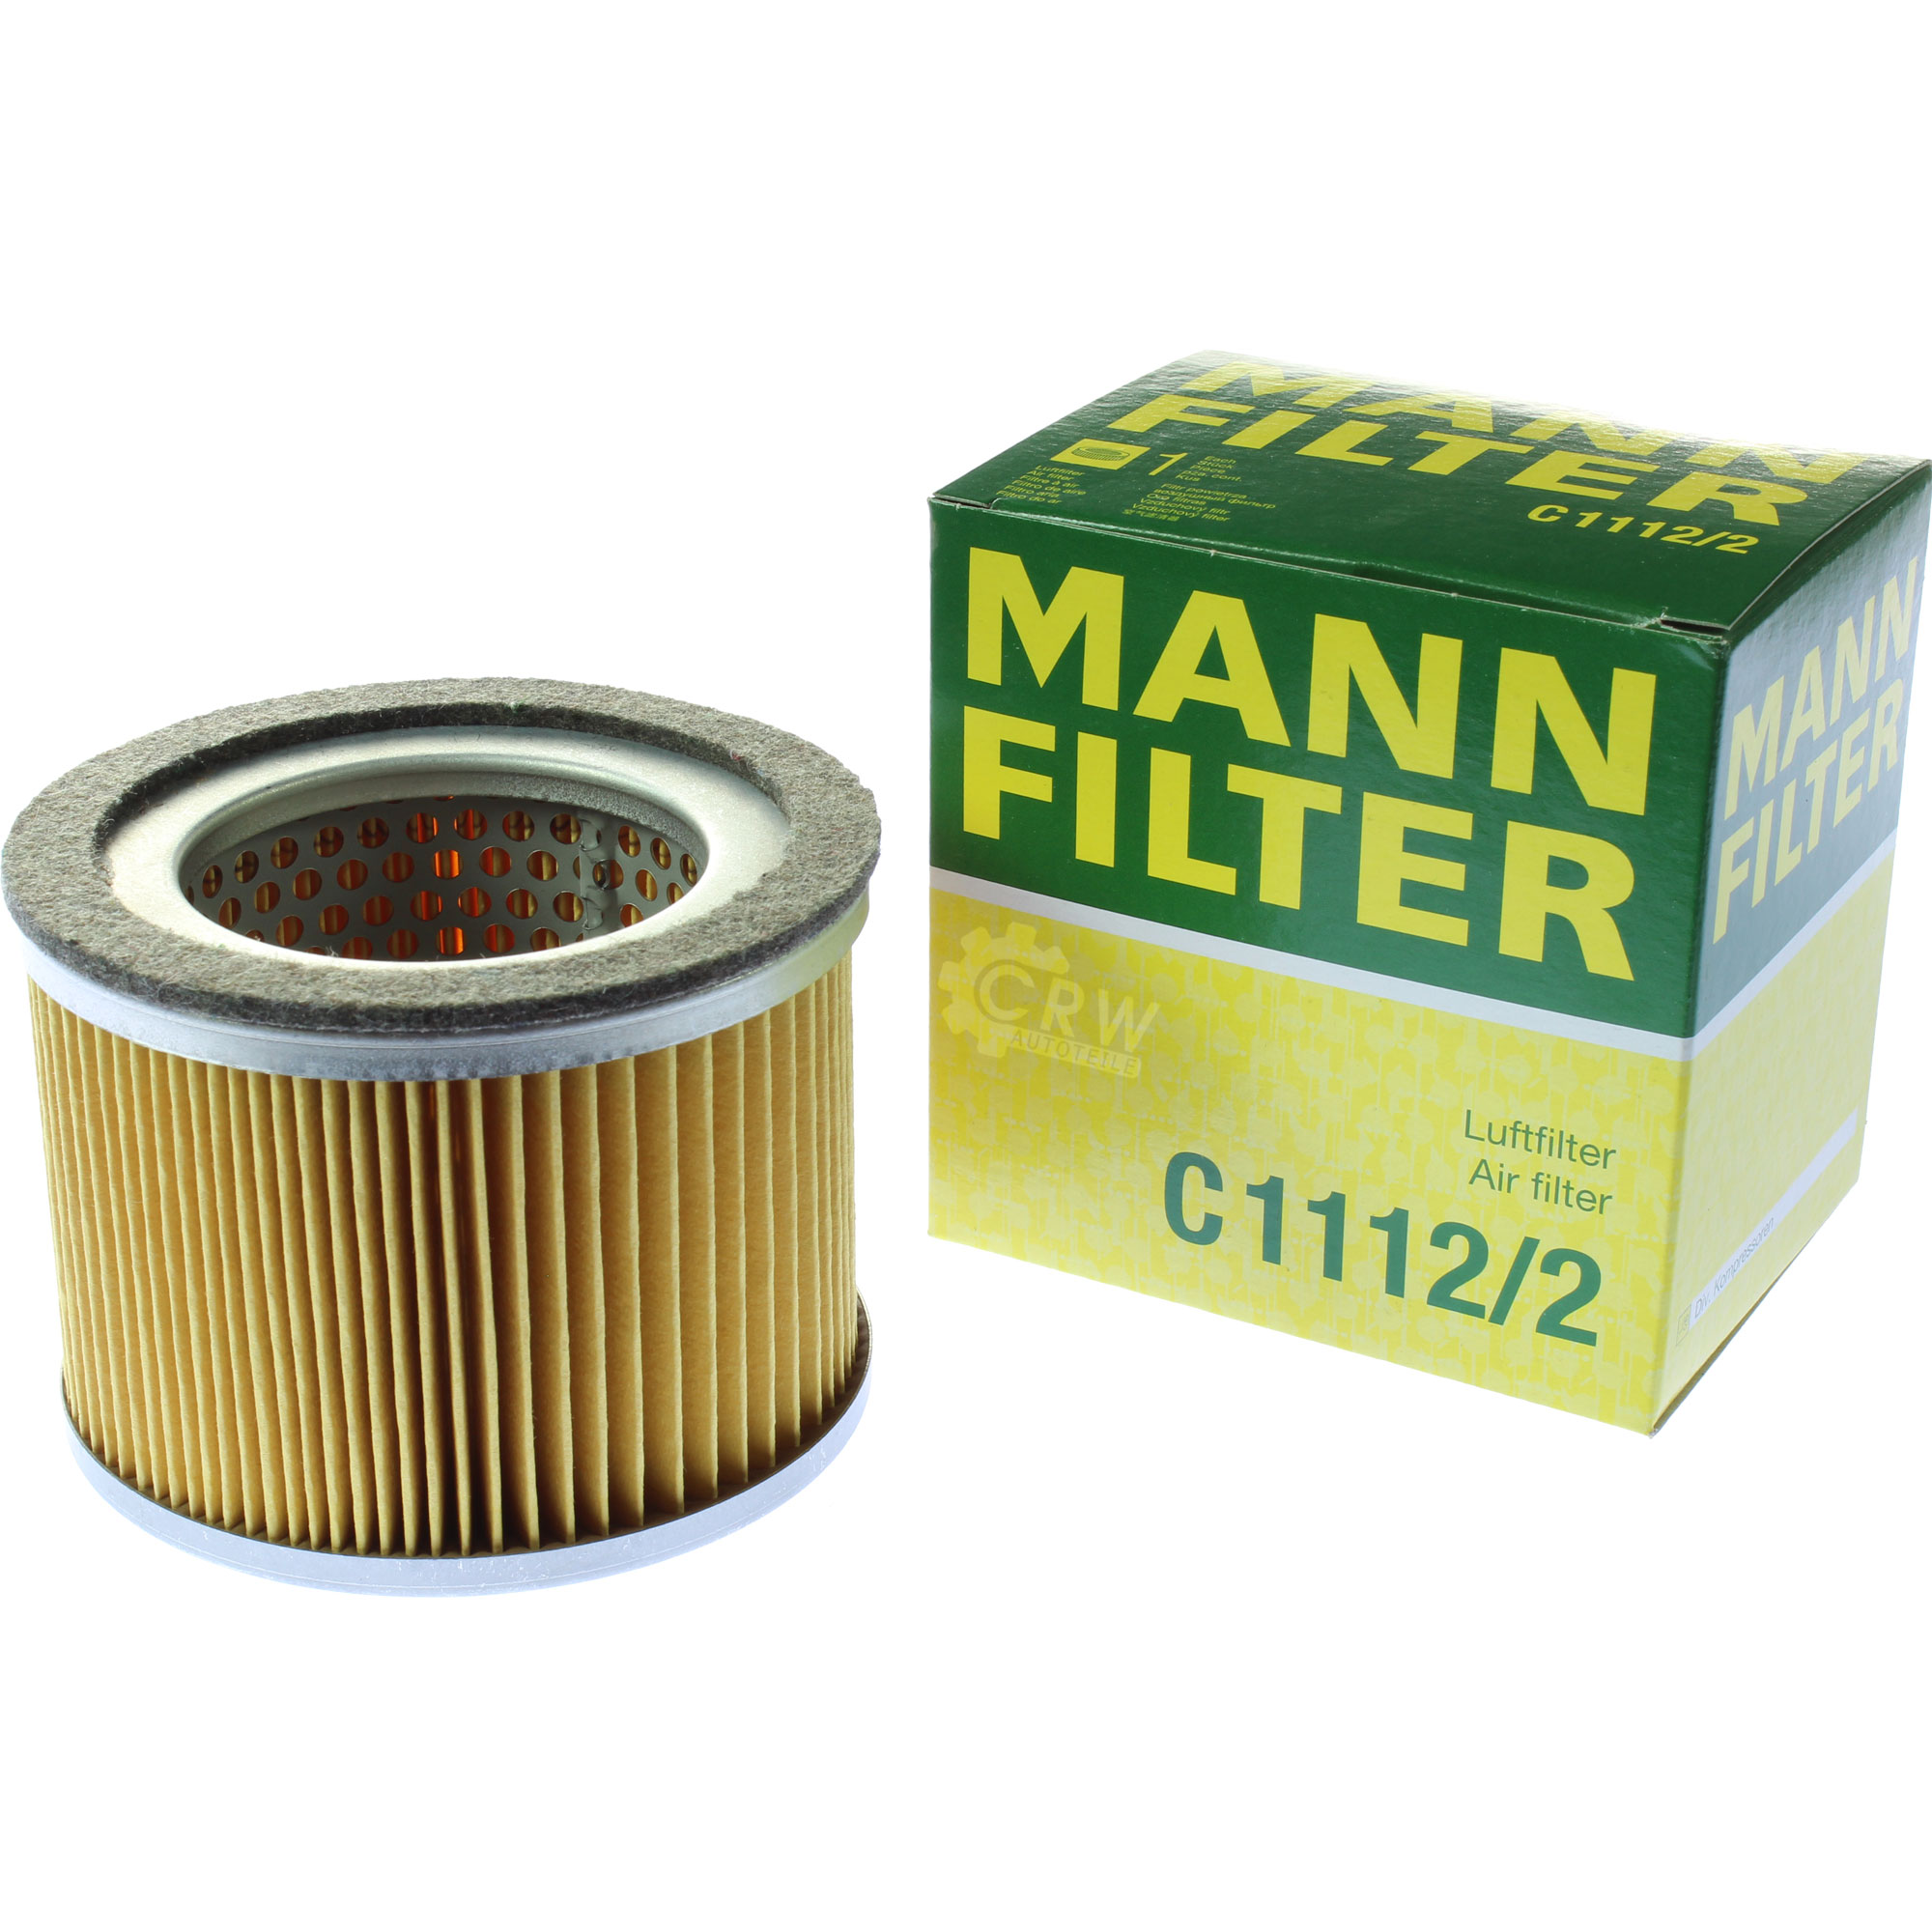 MANN-FILTER Luftfilter C 1112/2